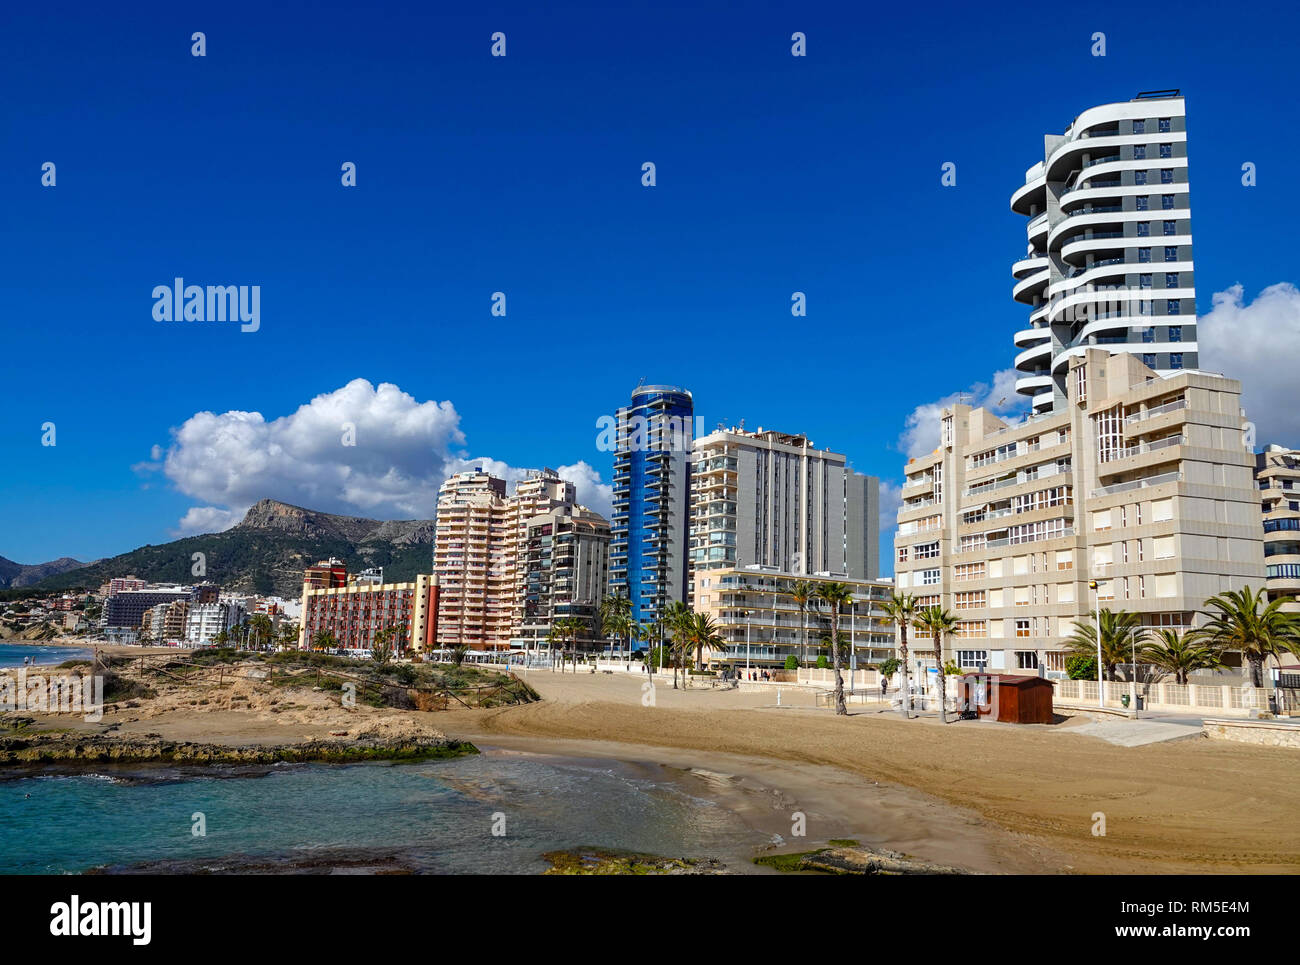 Mar azul, playa y bloques de apartamentos en el centro turístico popular española de Calpe, provincia de Valencia, España Foto de stock